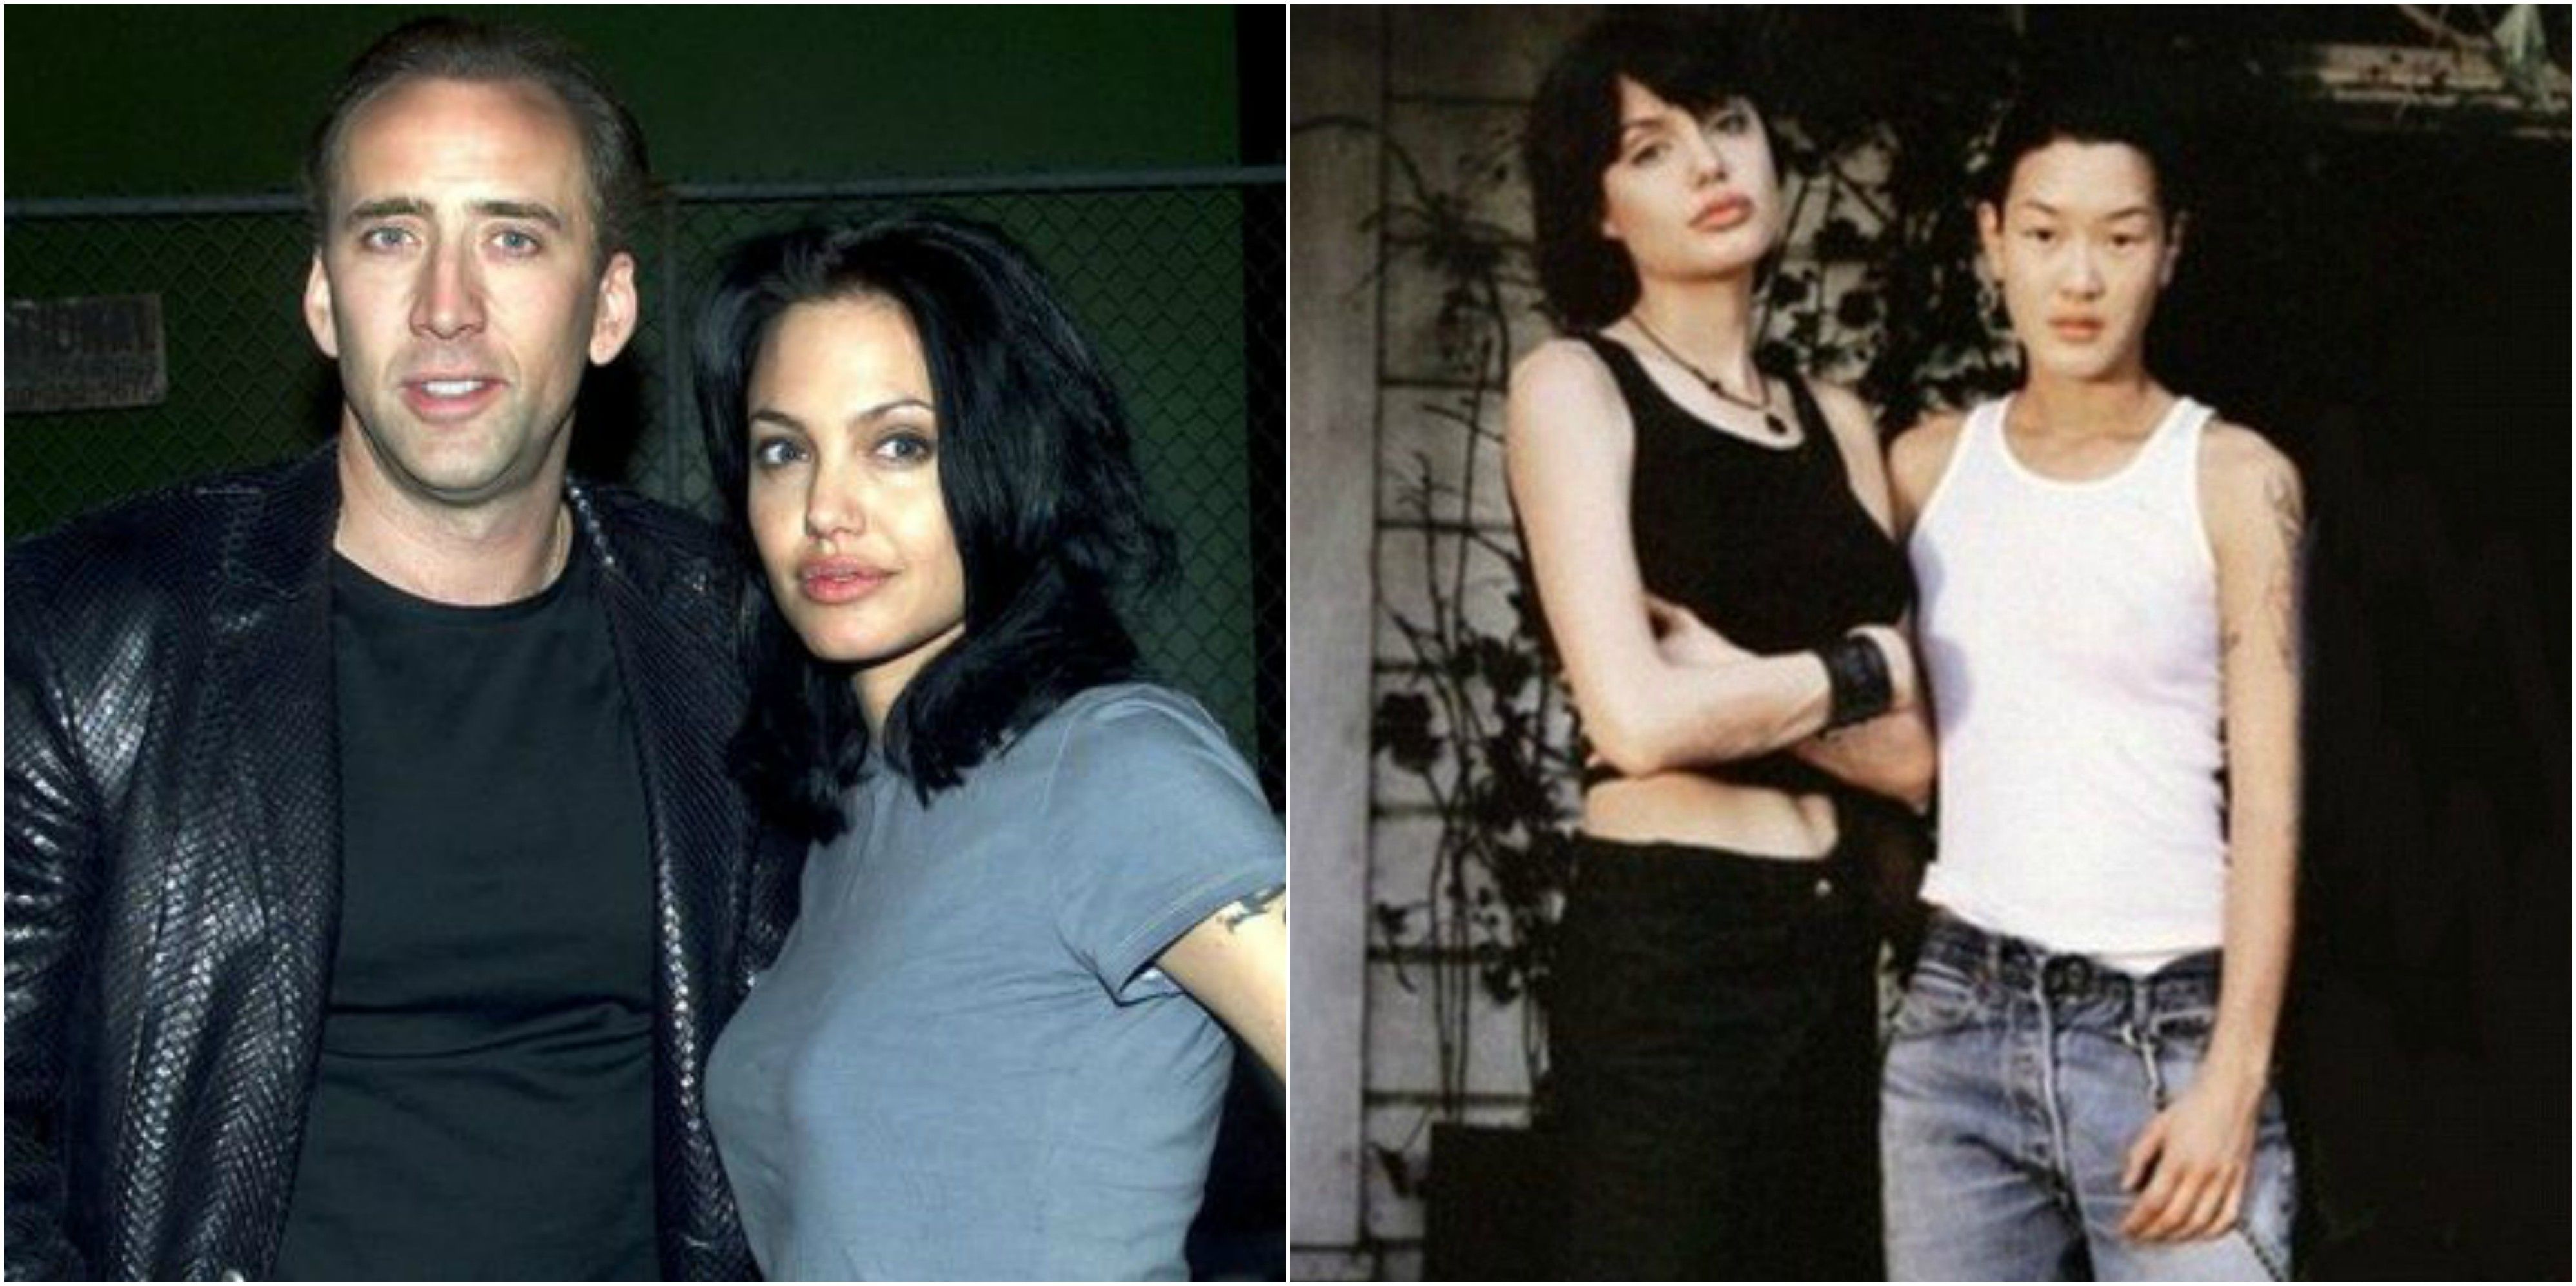 Angelina Jolie And Antonio Bandares